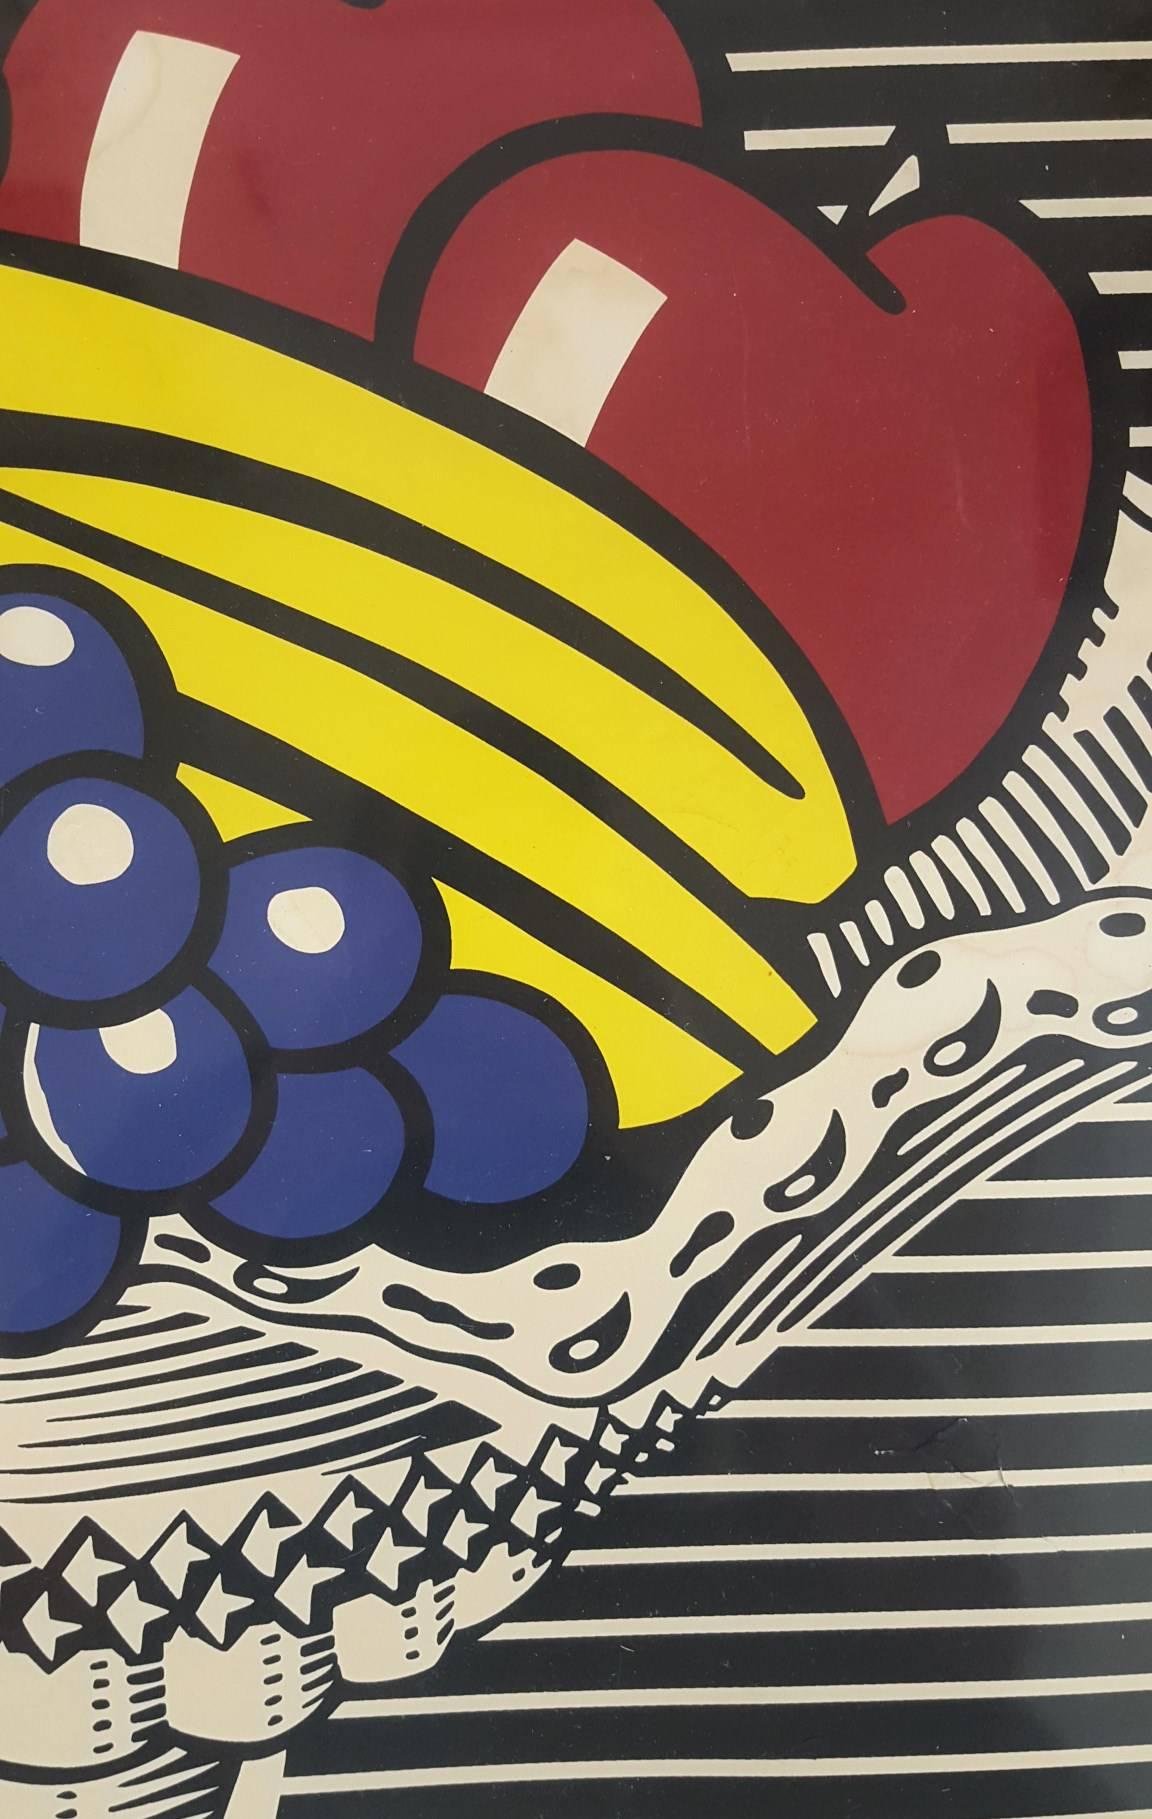 An original exhibition poster by American artist Roy Lichtenstein (1923-1997) titled 